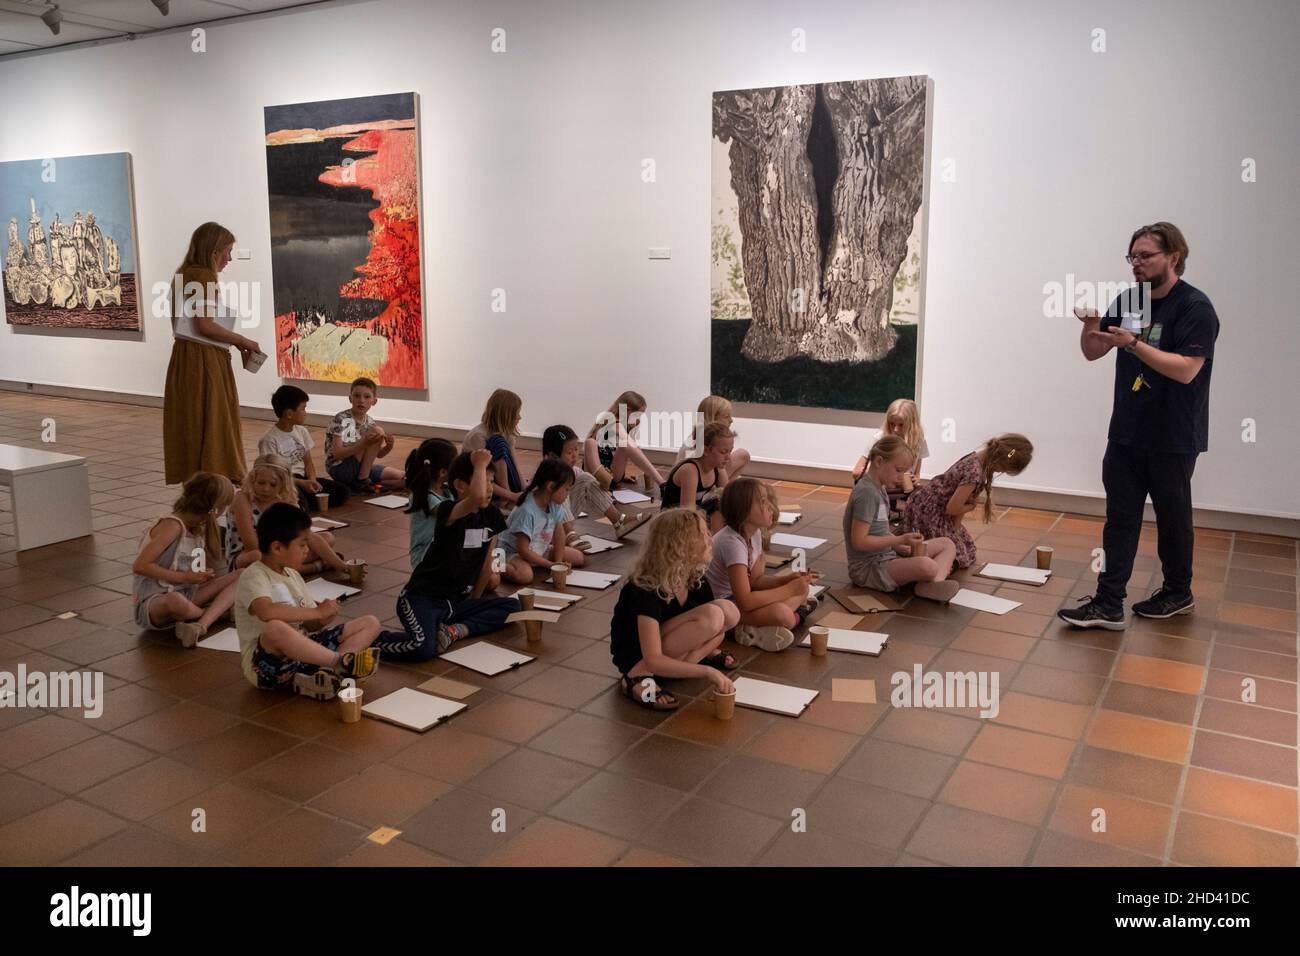 Los niños son enseñados en un museo de arte. Foto de stock